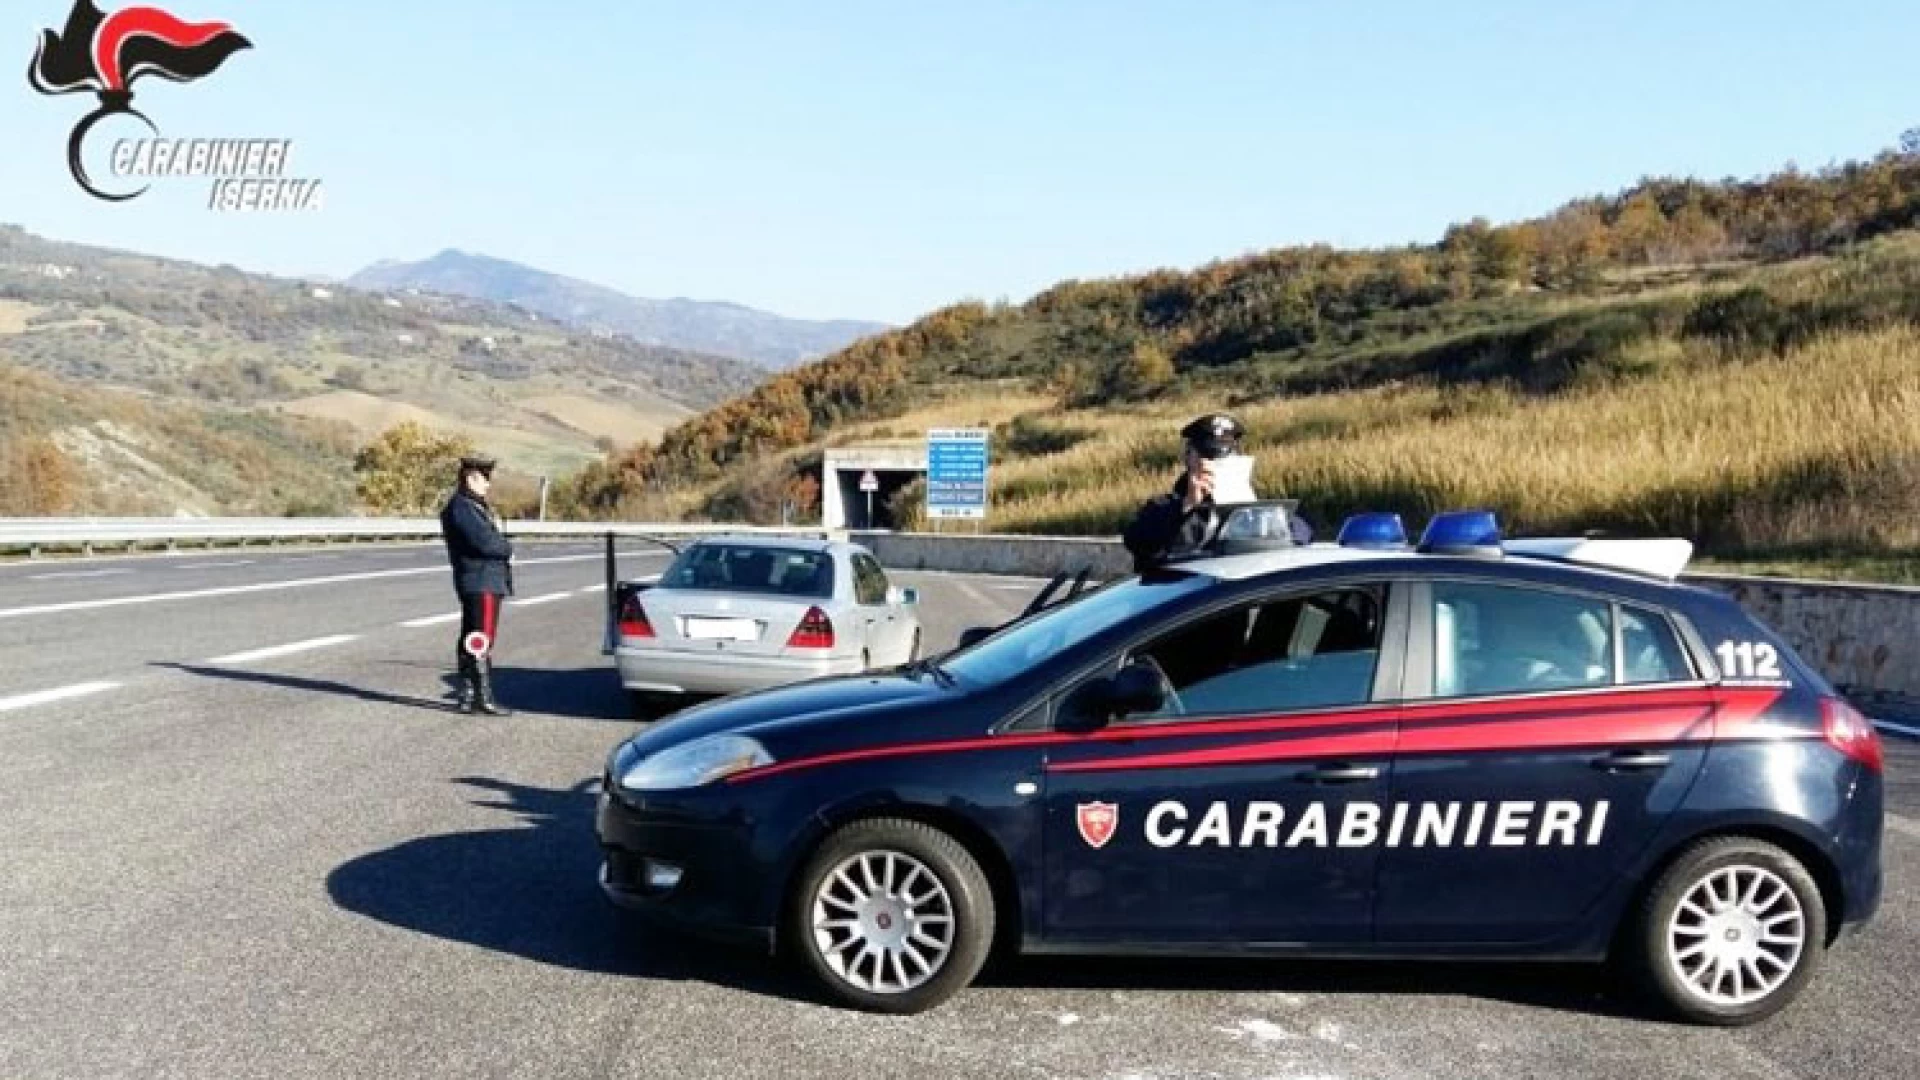 Isernia: Controllo straordinario del territorio da parte dei Carabinieri, eseguite perquisizioni e sequestro di stupefacenti.